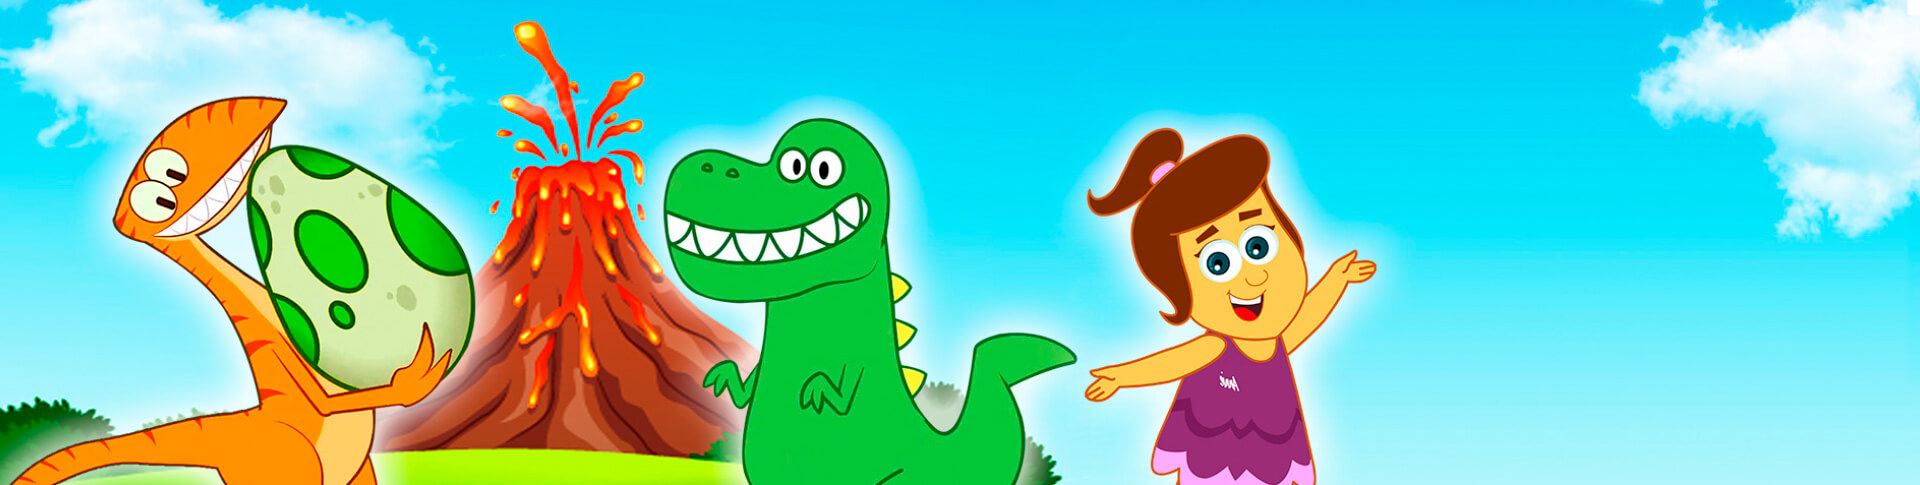 HooplaKidz - Popular Nursery Rhymes for Kids & Preschool Songs